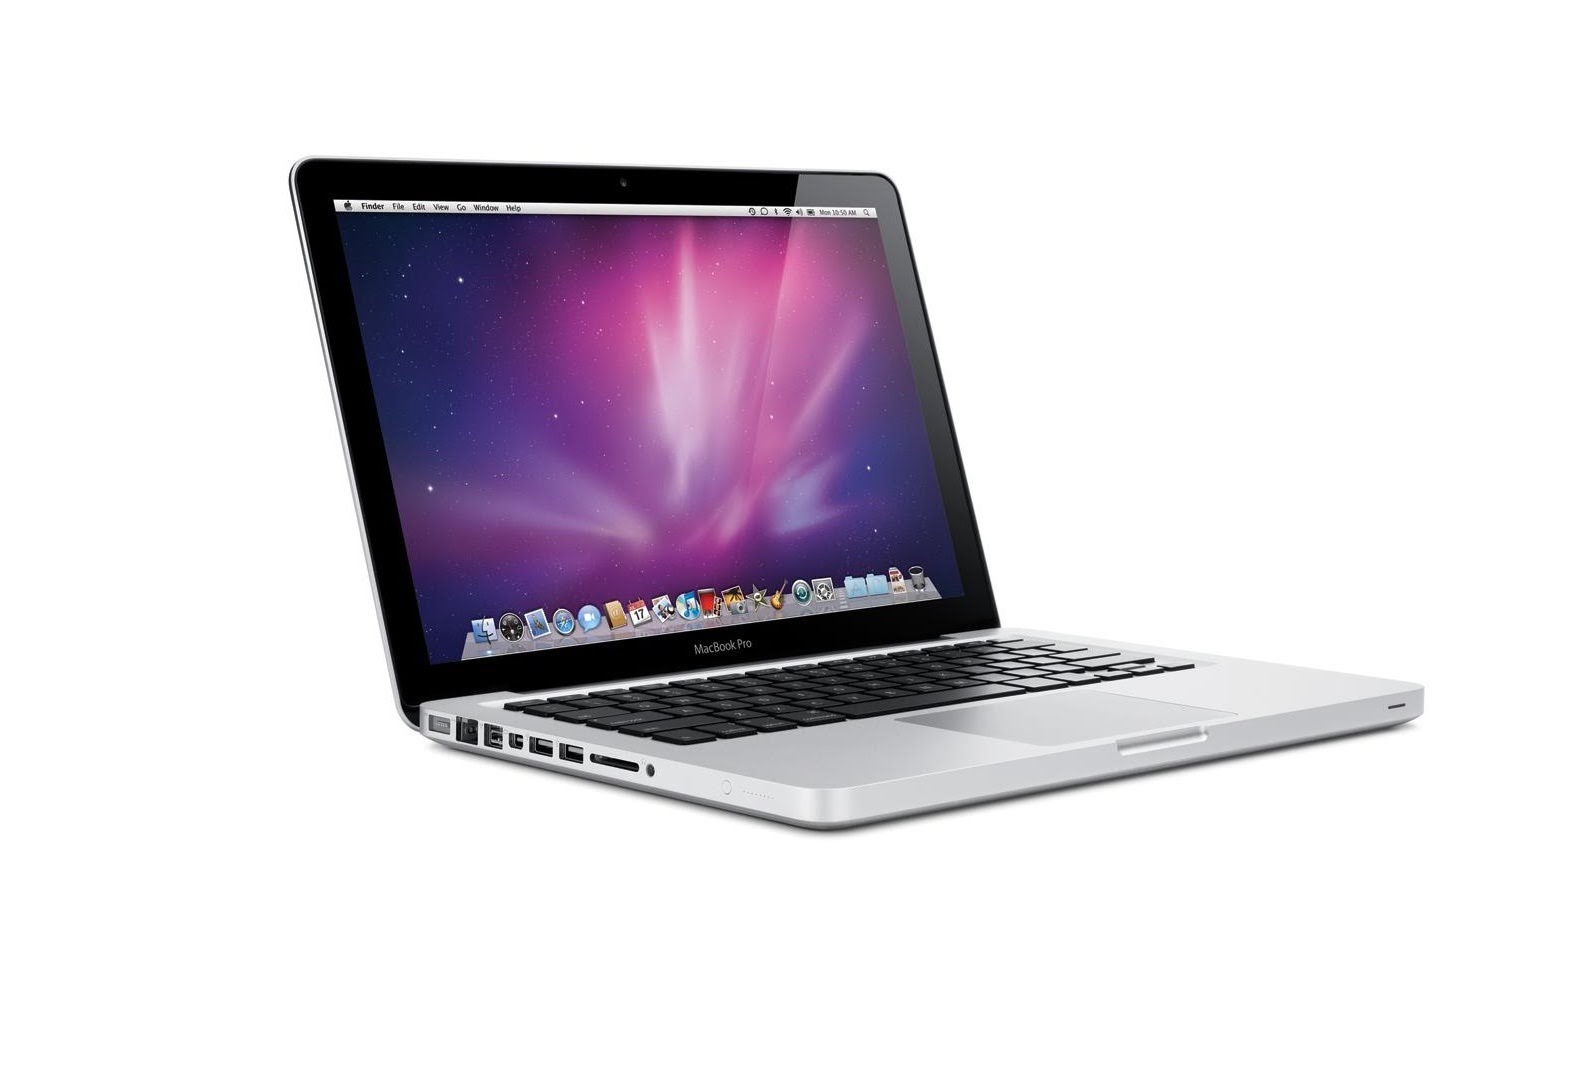 【楽天市場】MacBookPro/13インチ/Core2Duo/HDD250GB/メモリ4G/Mid2009(A1278)MB990J/A【送料無料】【中古】:  パソコン・パオーンズ